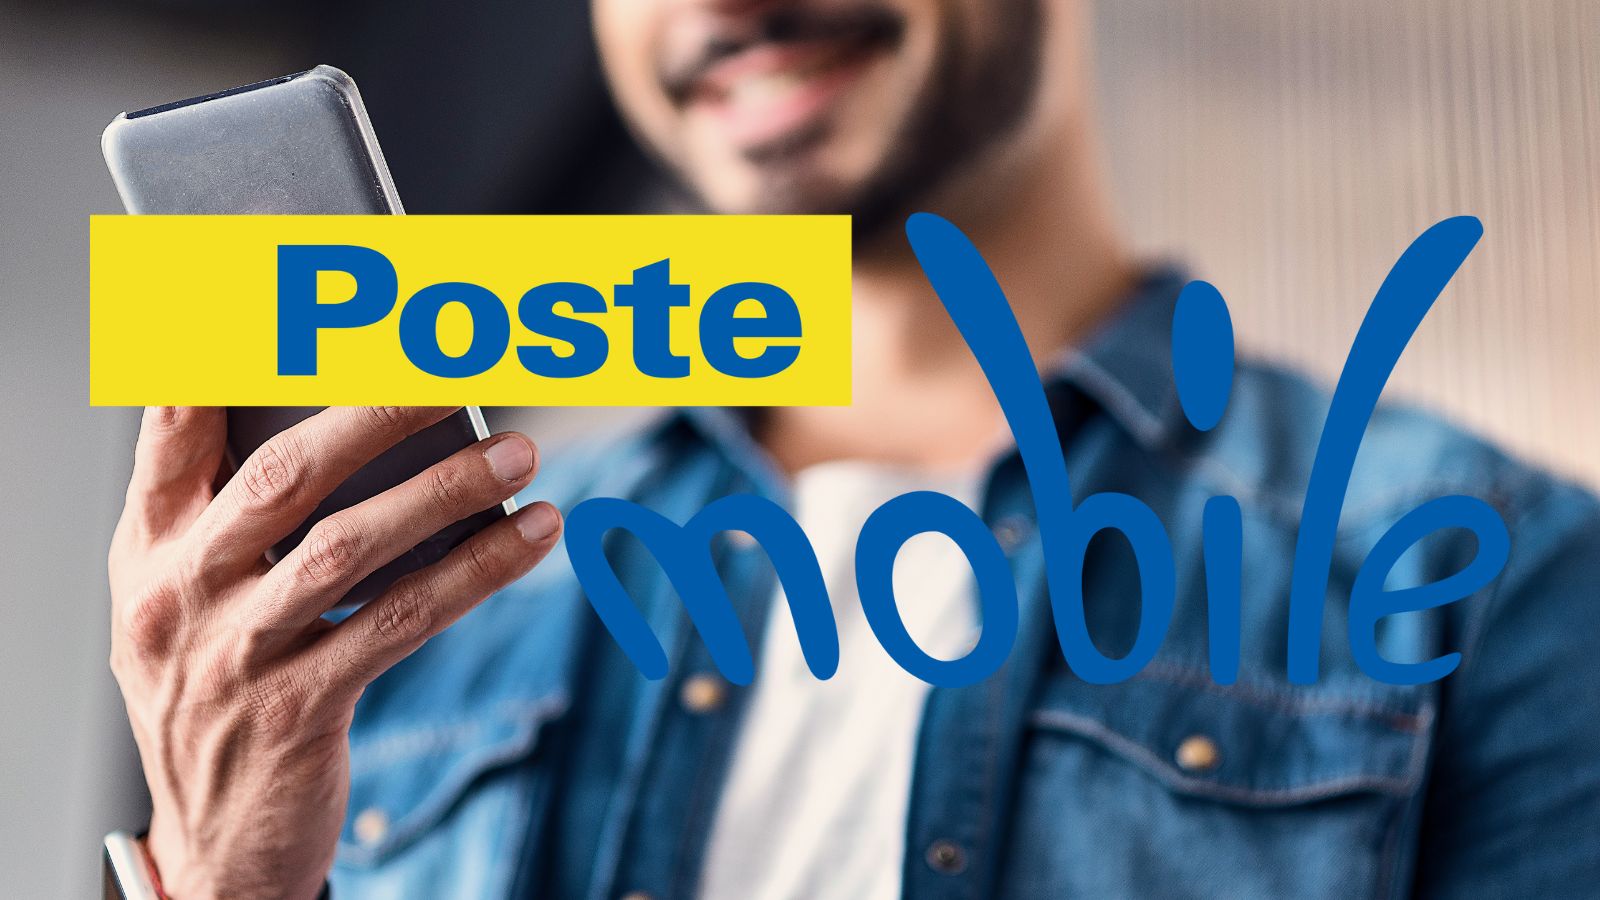 PosteMobile, offerta IRRESISTIBILE da 150 giga al mese a soli 8 euro